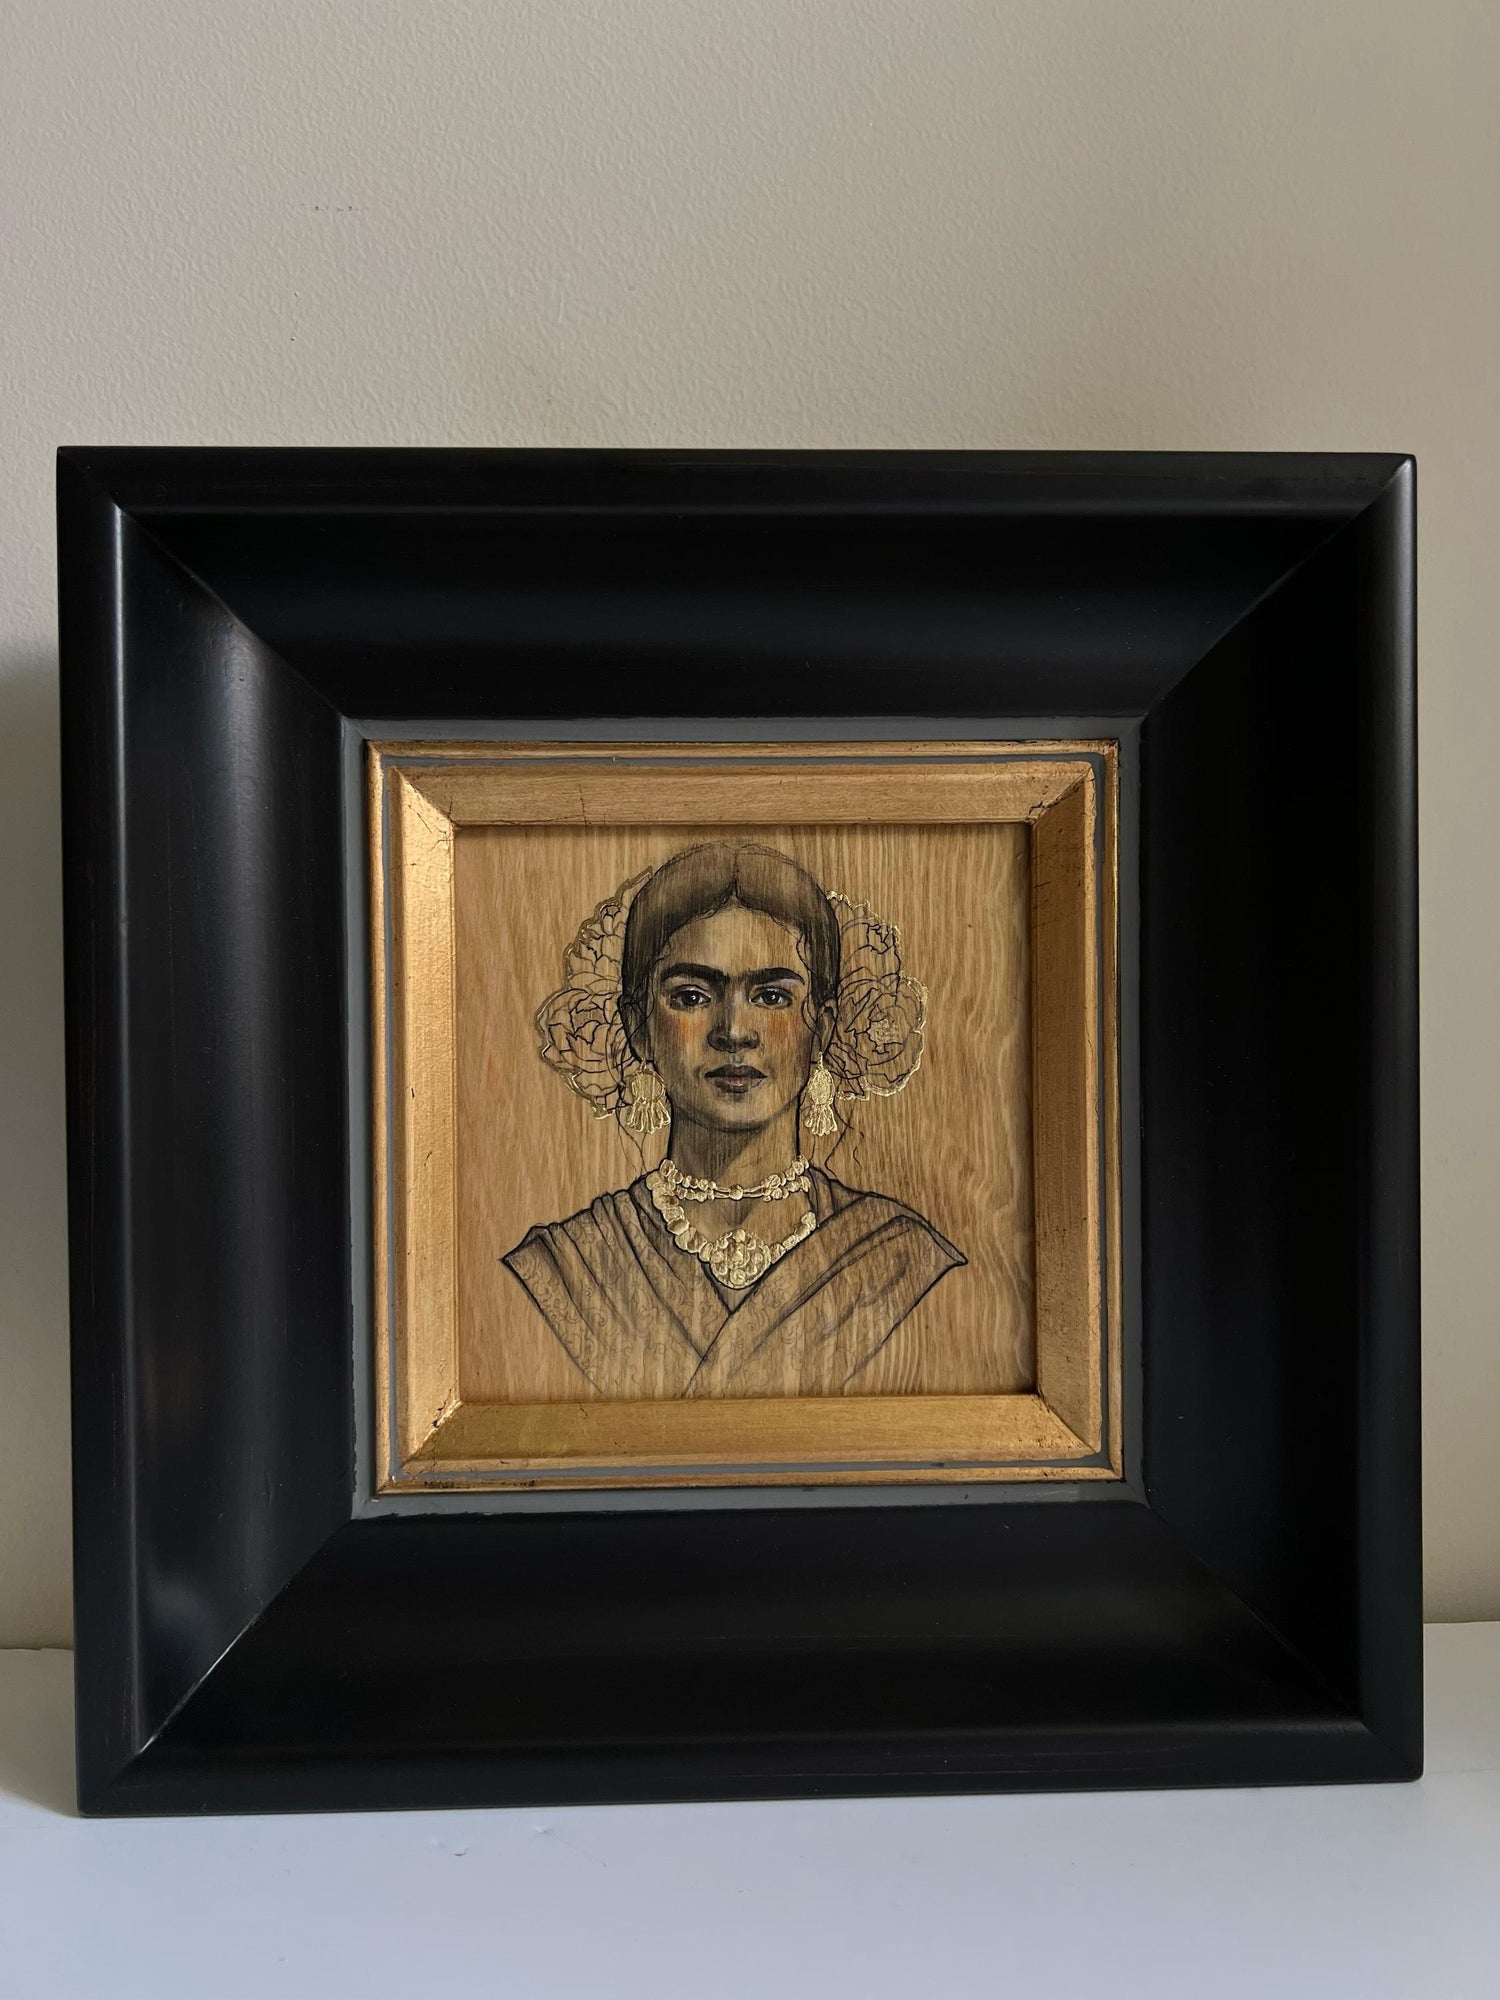 Frida Kahlo study